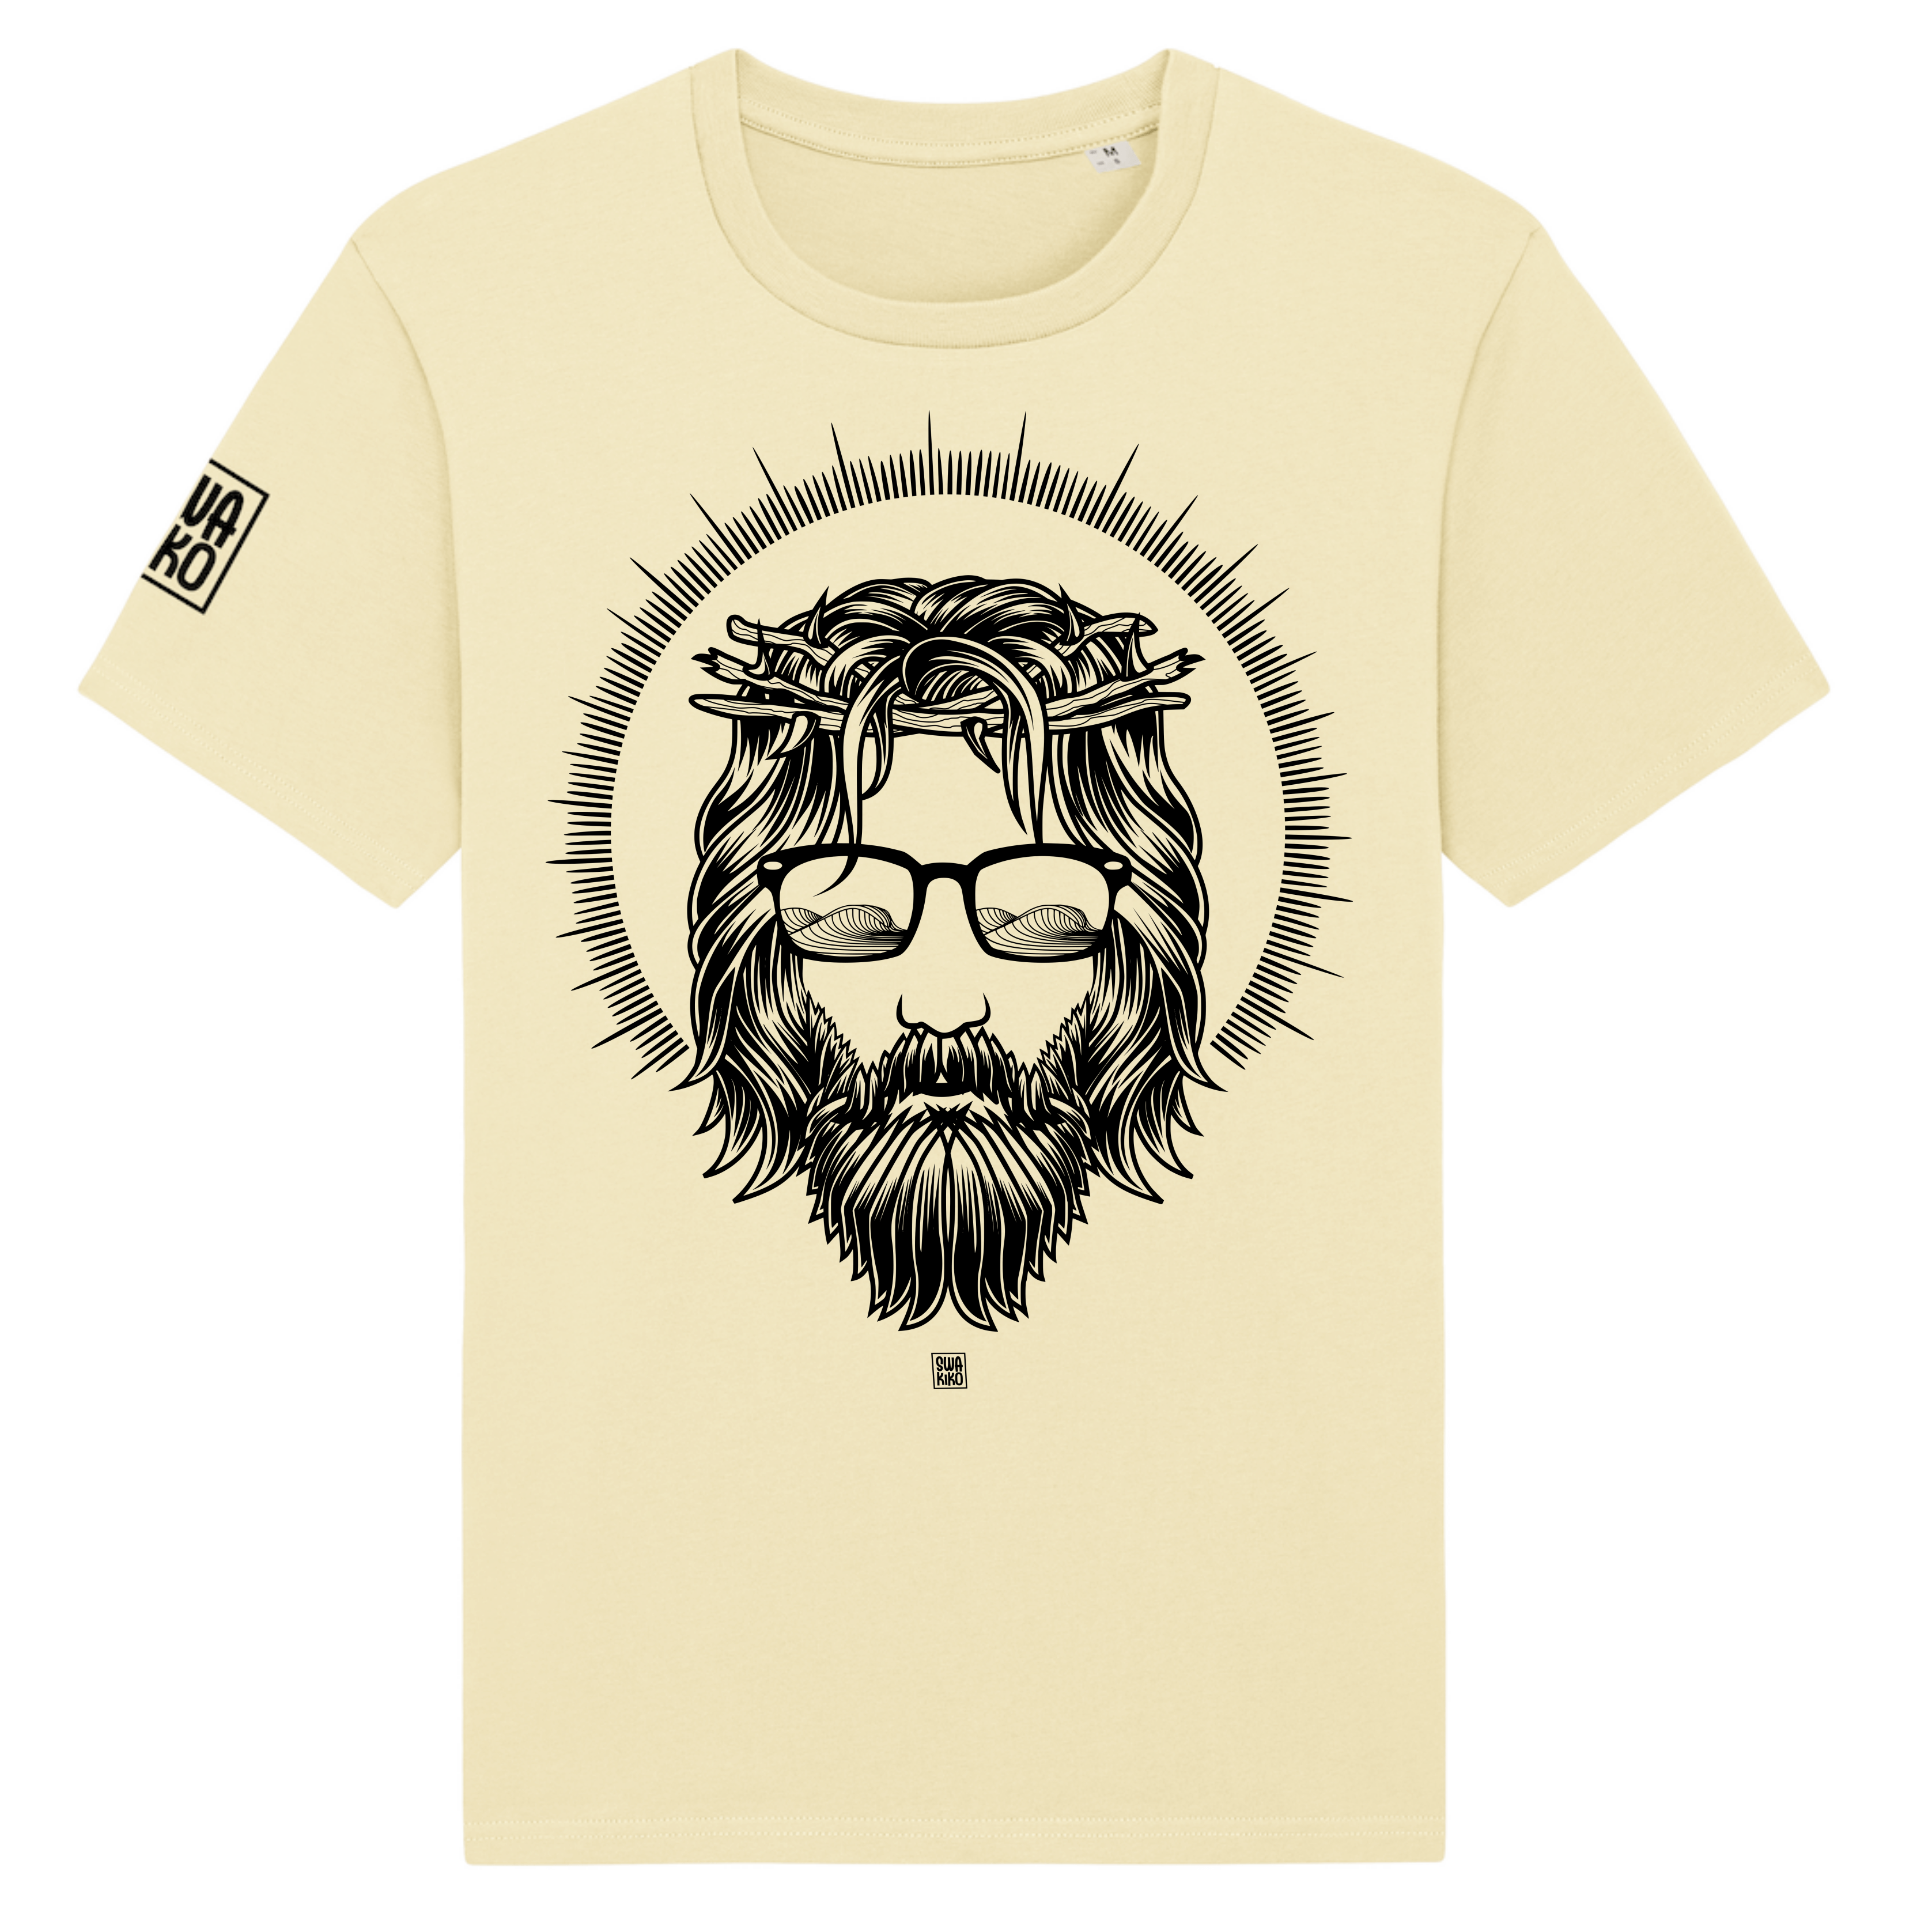 Heel surf t-shirt met artwork van meneer van Nazareth met zonnebril